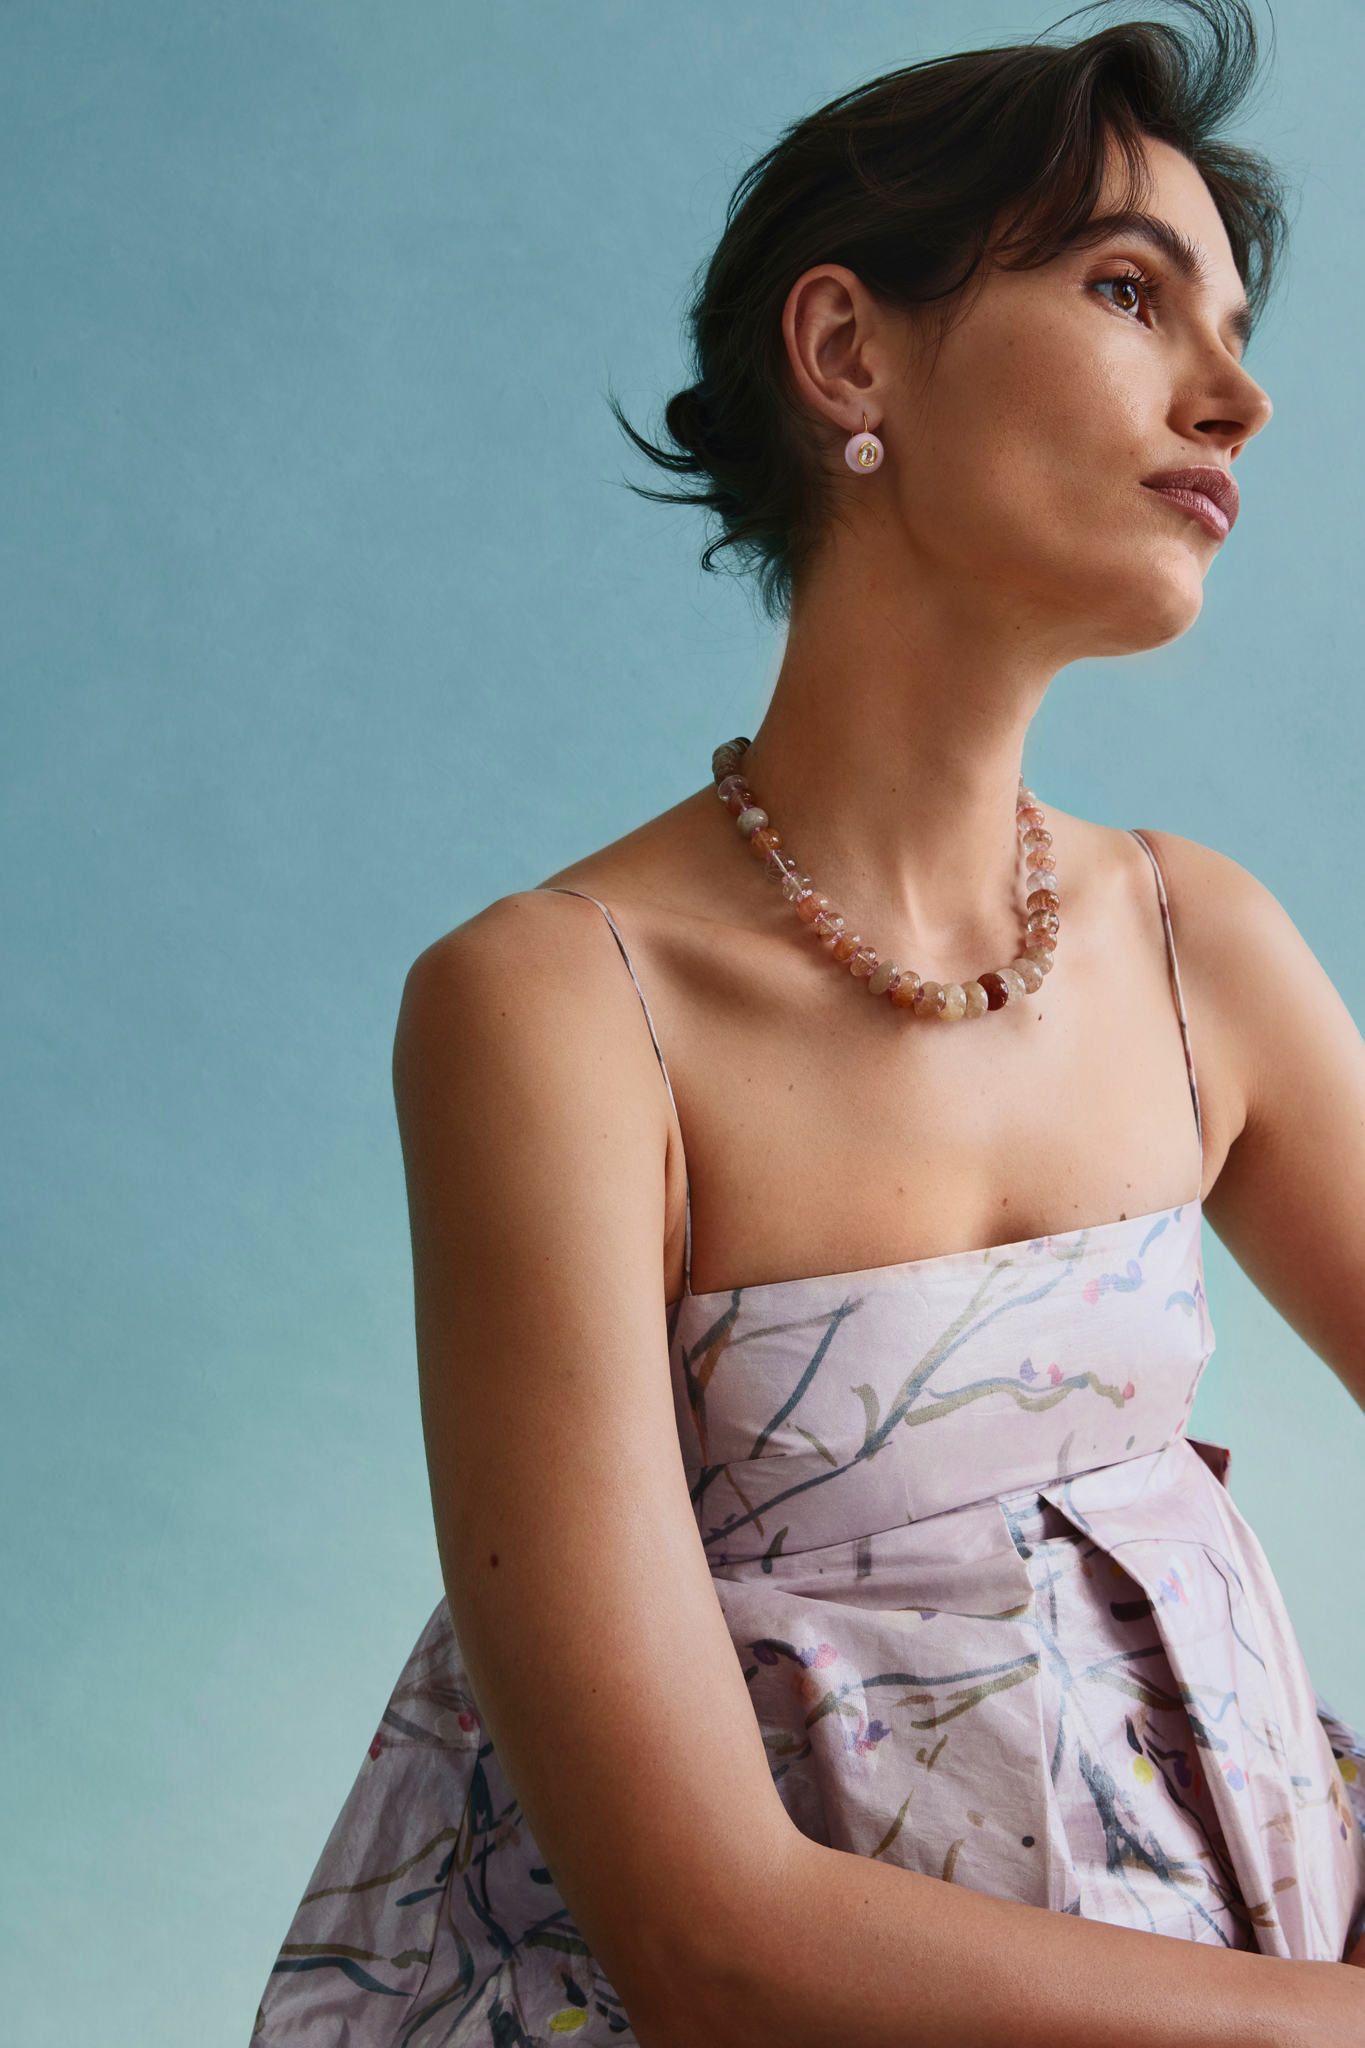 Lizzie Fortunato Jewels - Cliffs Necklace, Pink